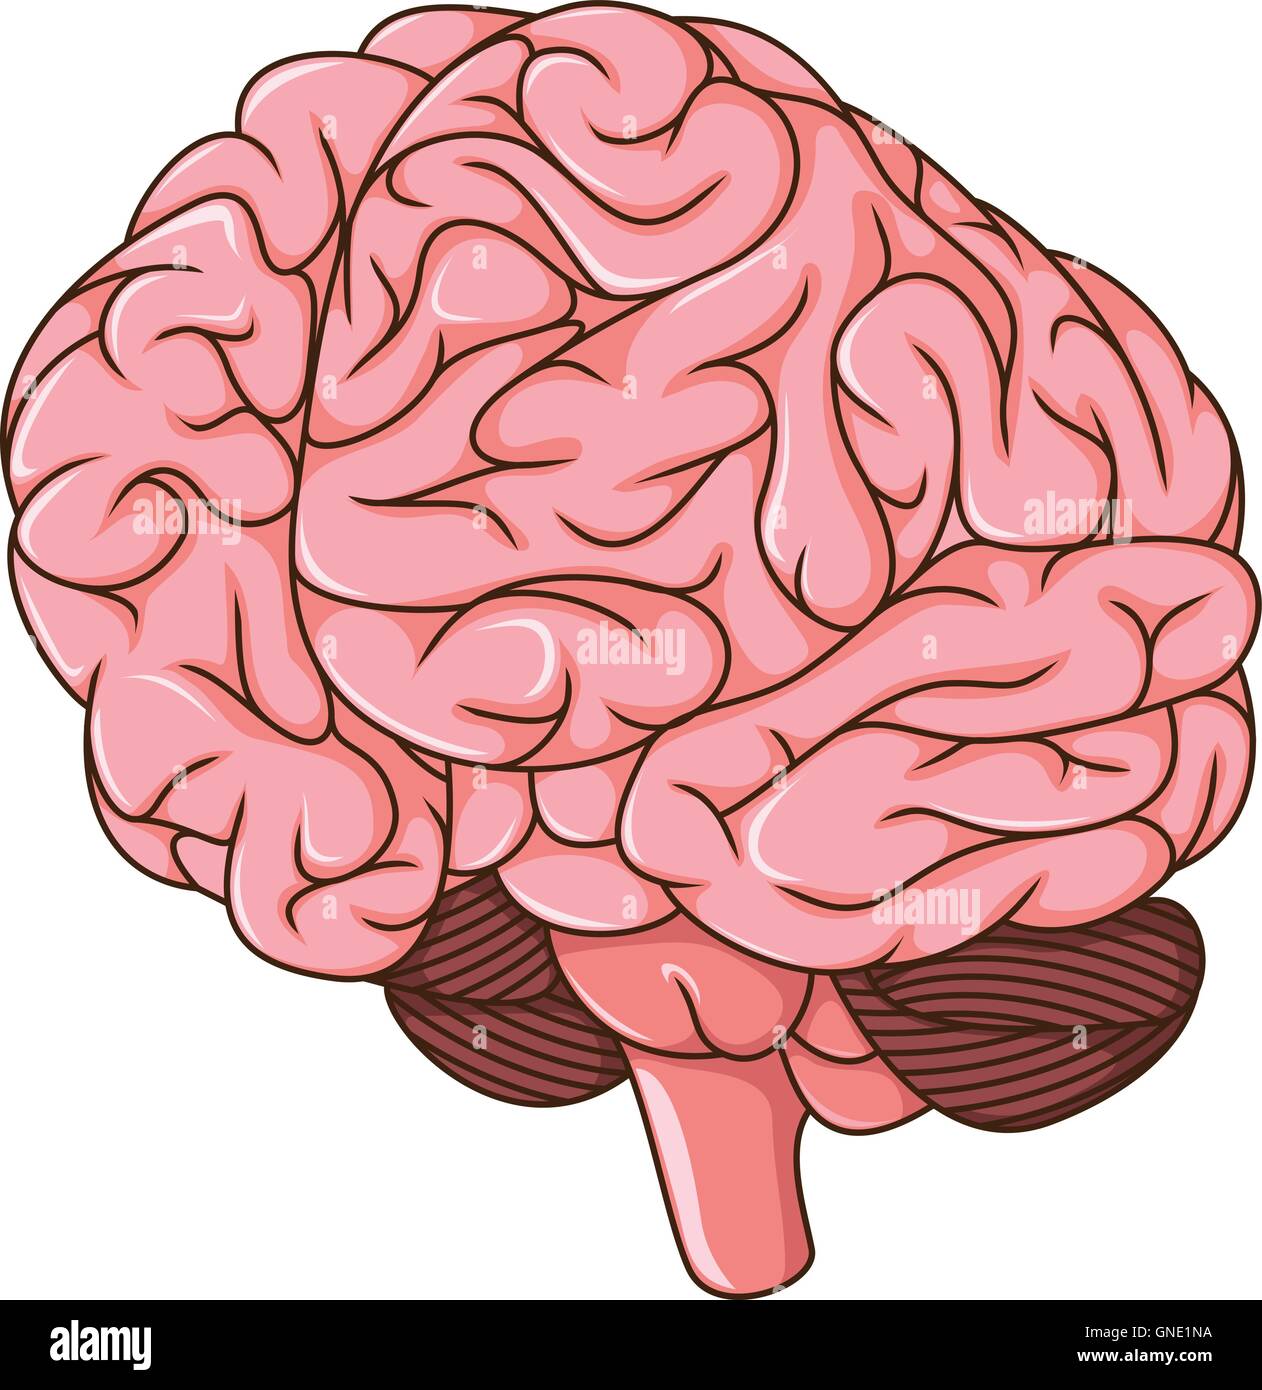 Cervello umano i coaguli cartoon Illustrazione Vettoriale